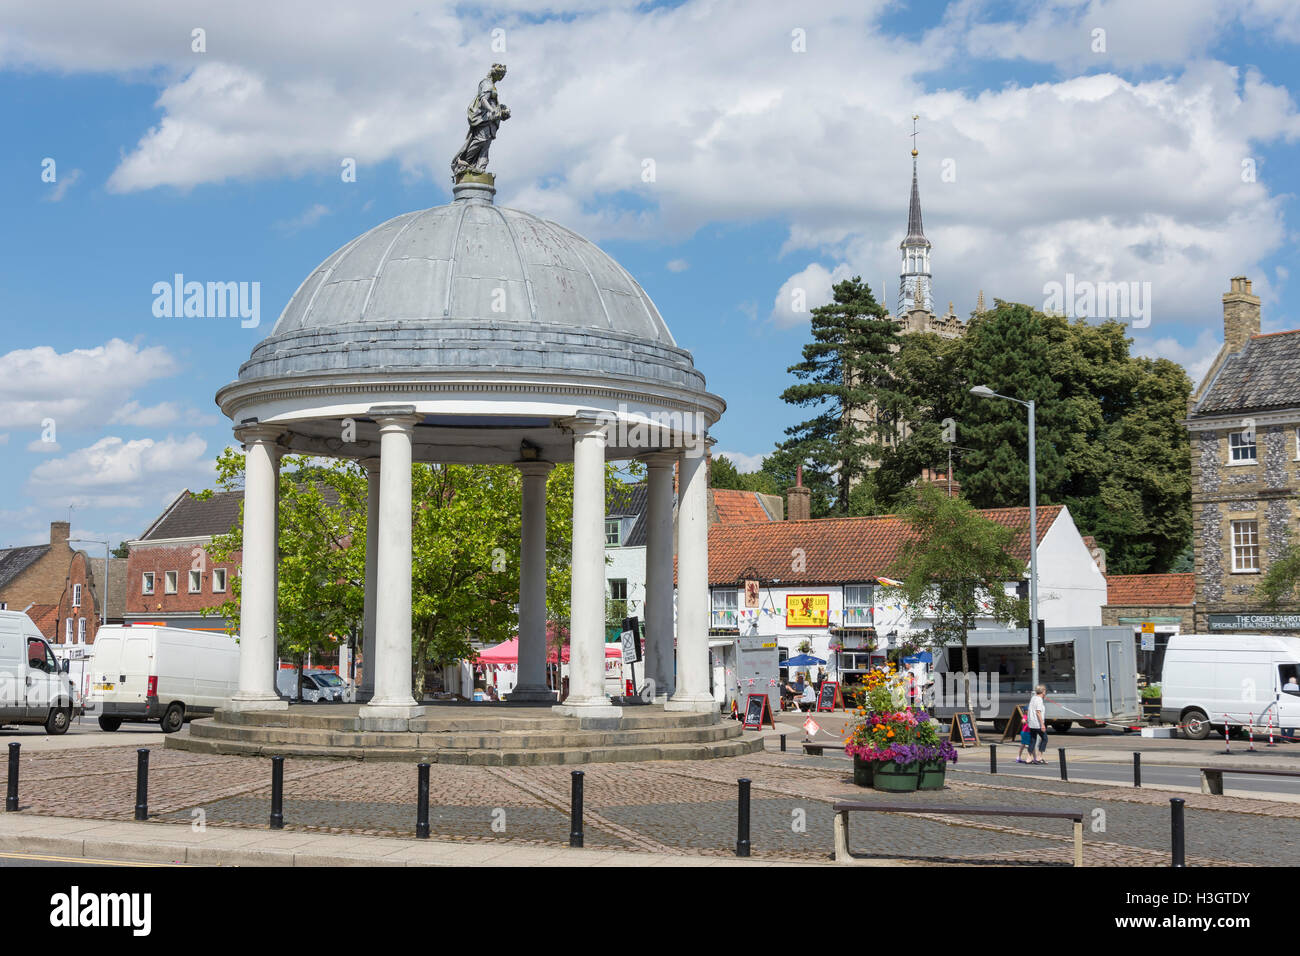 Rotunda in Market Place, Swaffham, Norfolk, England, United Kingdom Stock Photo